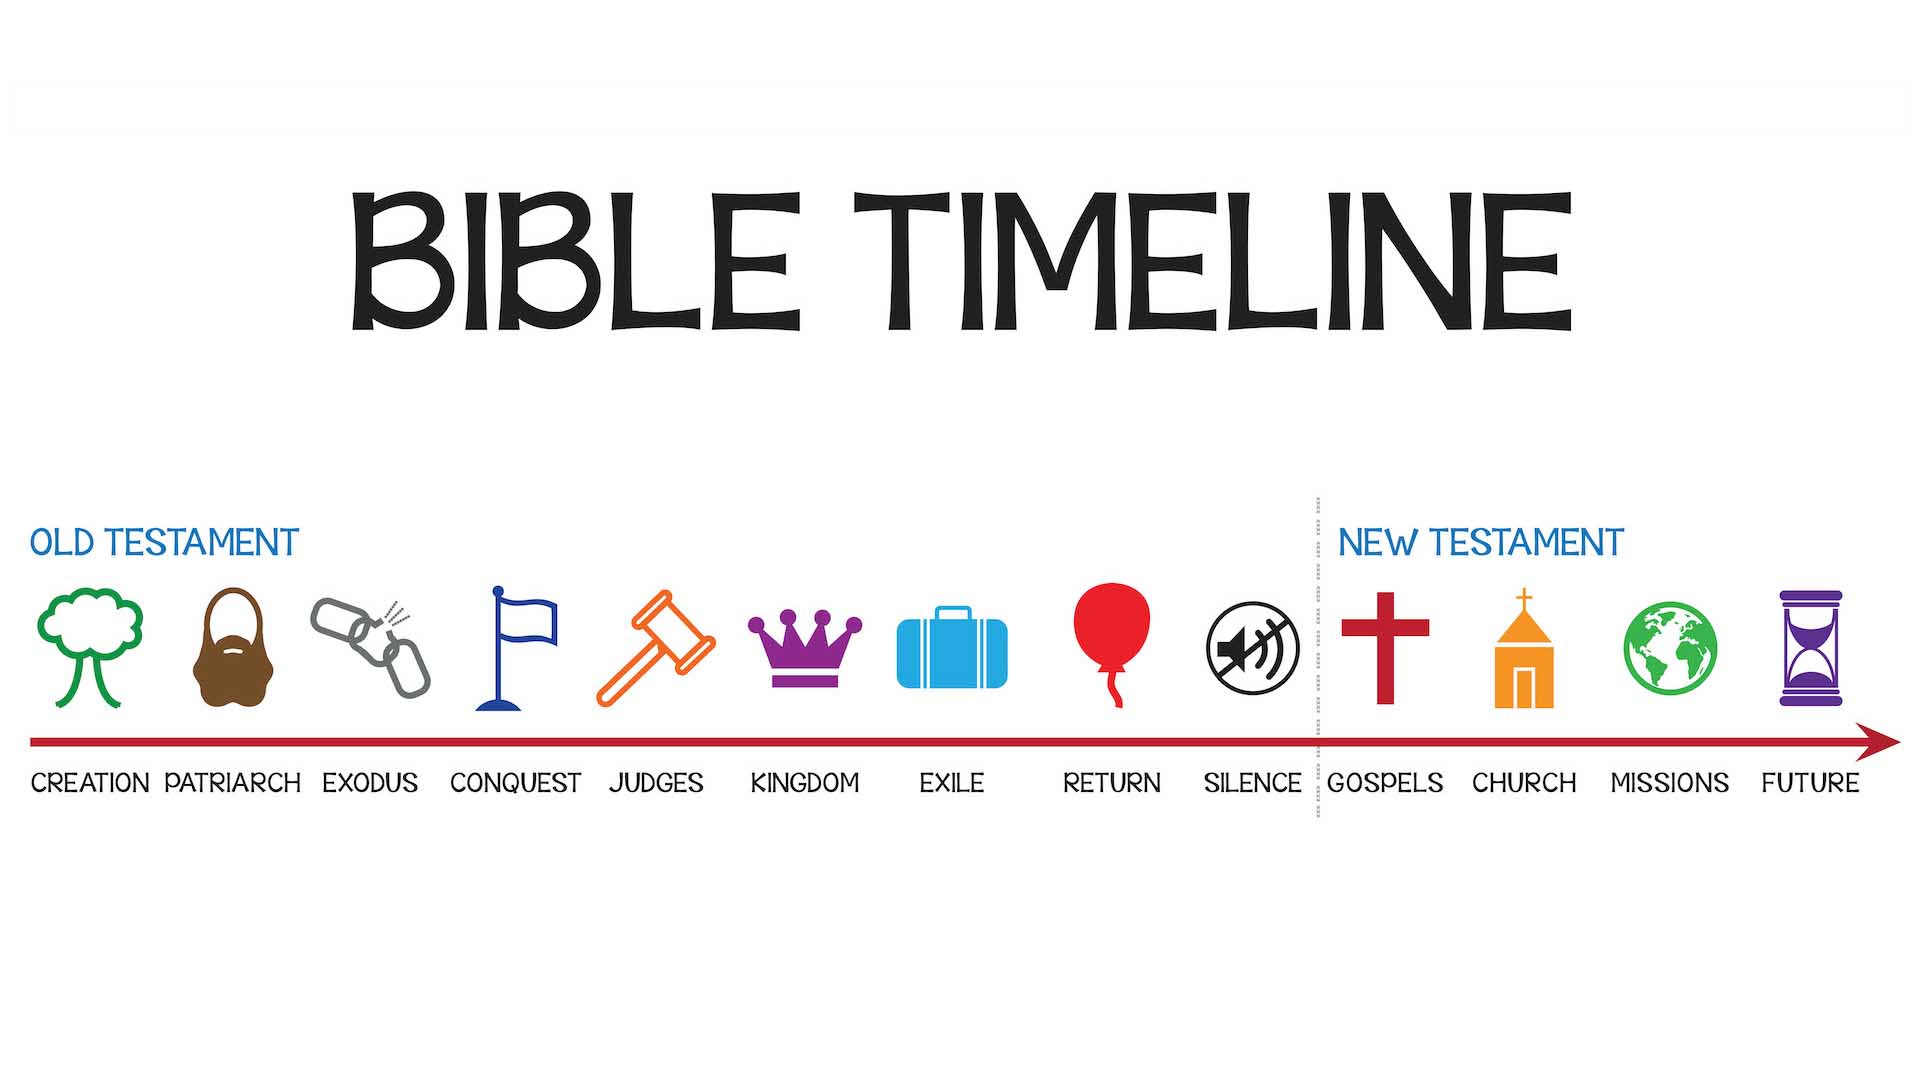 Bible Timeline image